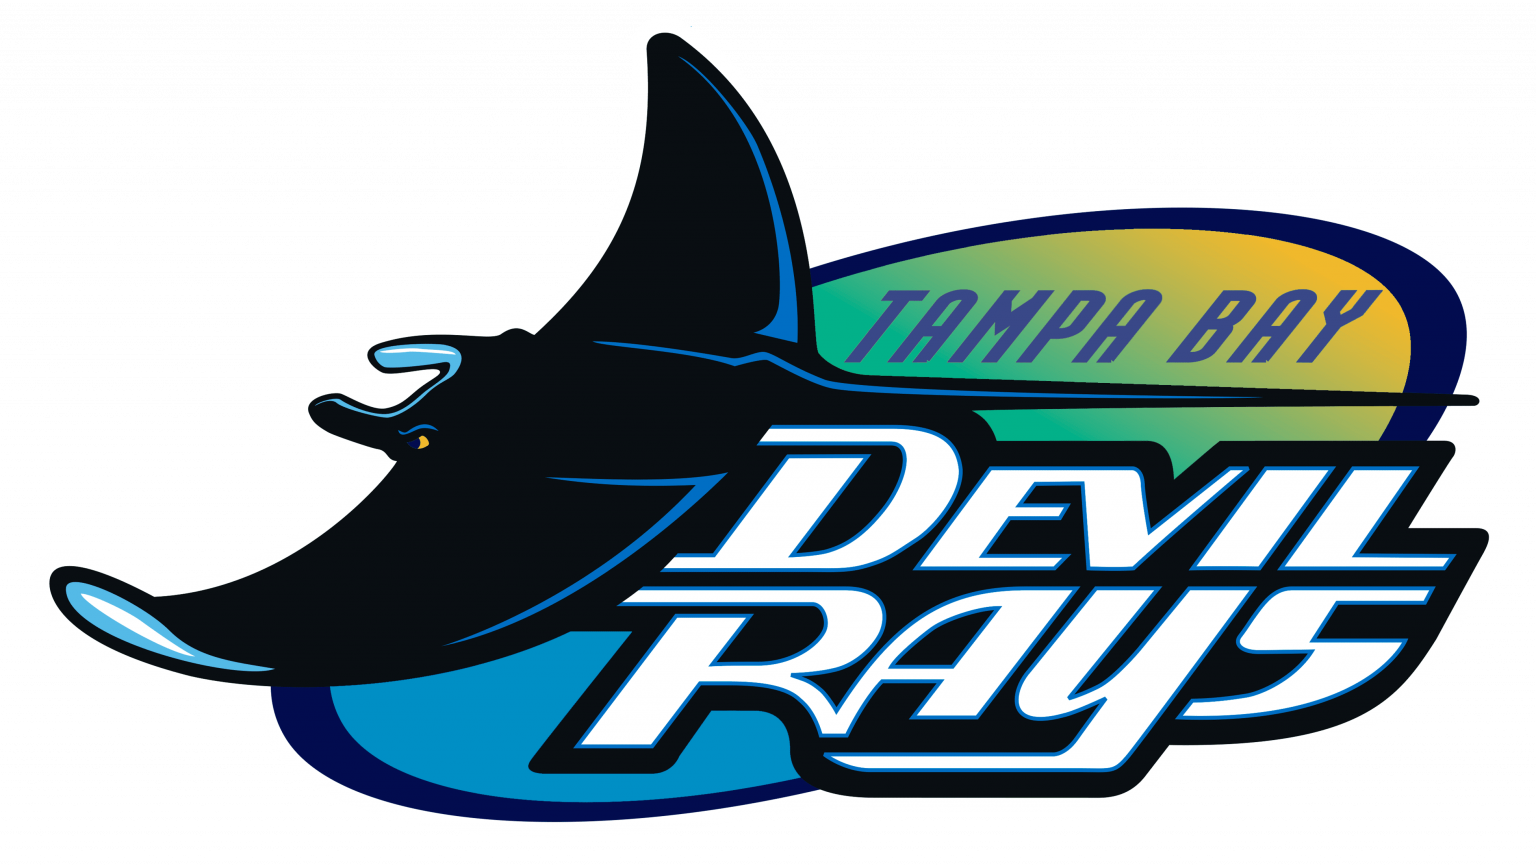 Tampa Bay Devil Rays Logo 1998.